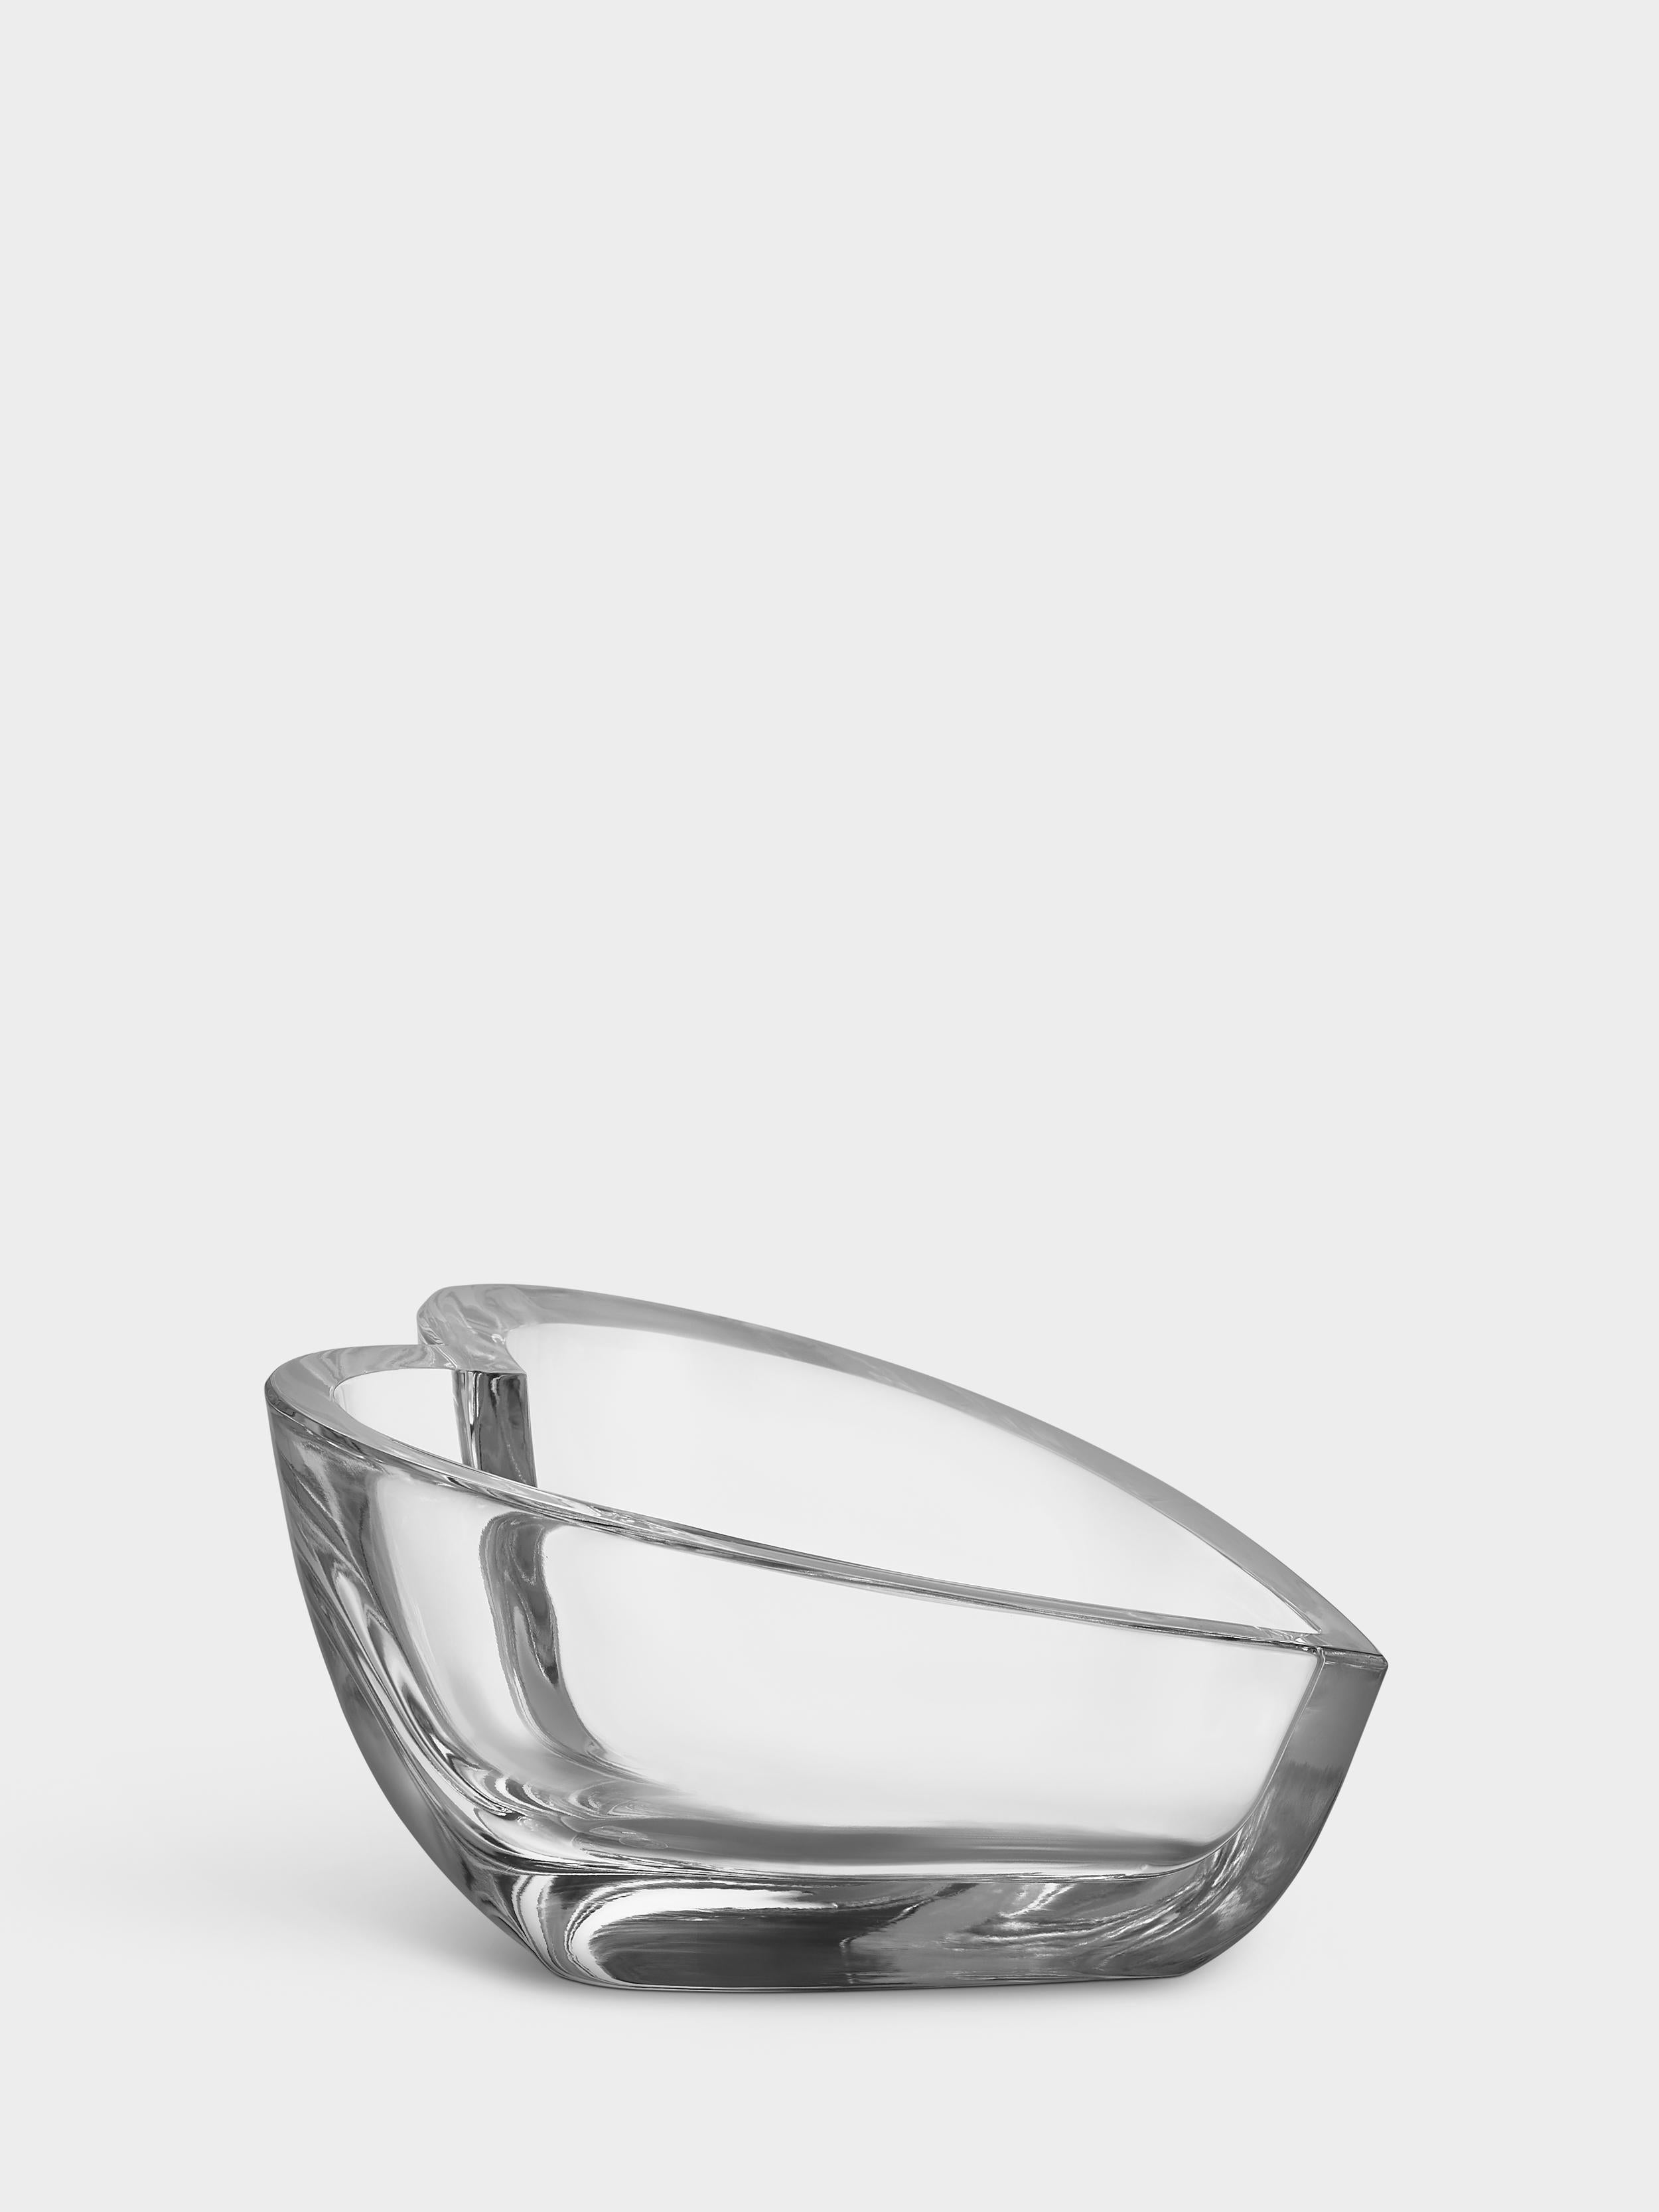 La coupe Valentino d'Orrefors a la forme d'un cœur et est fabriquée en cristal clair épais avec des bords doux qui lui donnent un aspect arrondi. L'objet est à la fois fonctionnel et décoratif. Conçu par Martti Rytkönen.
